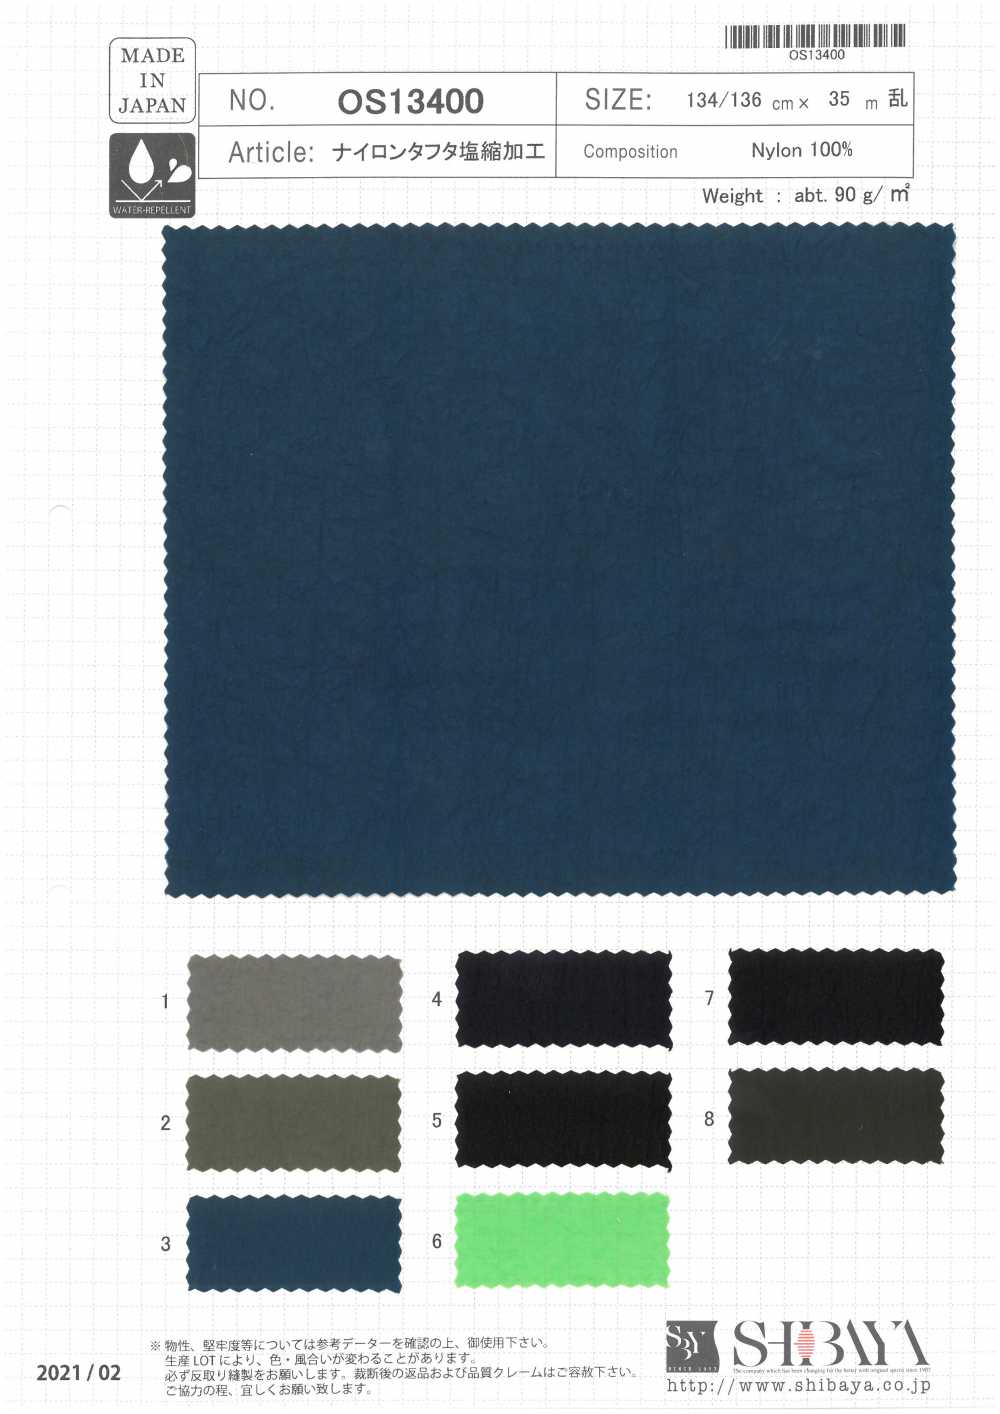 OS13400 Traitement De Rétrécissement Du Sel En Taffetas De Nylon[Fabrication De Textile] SHIBAYA